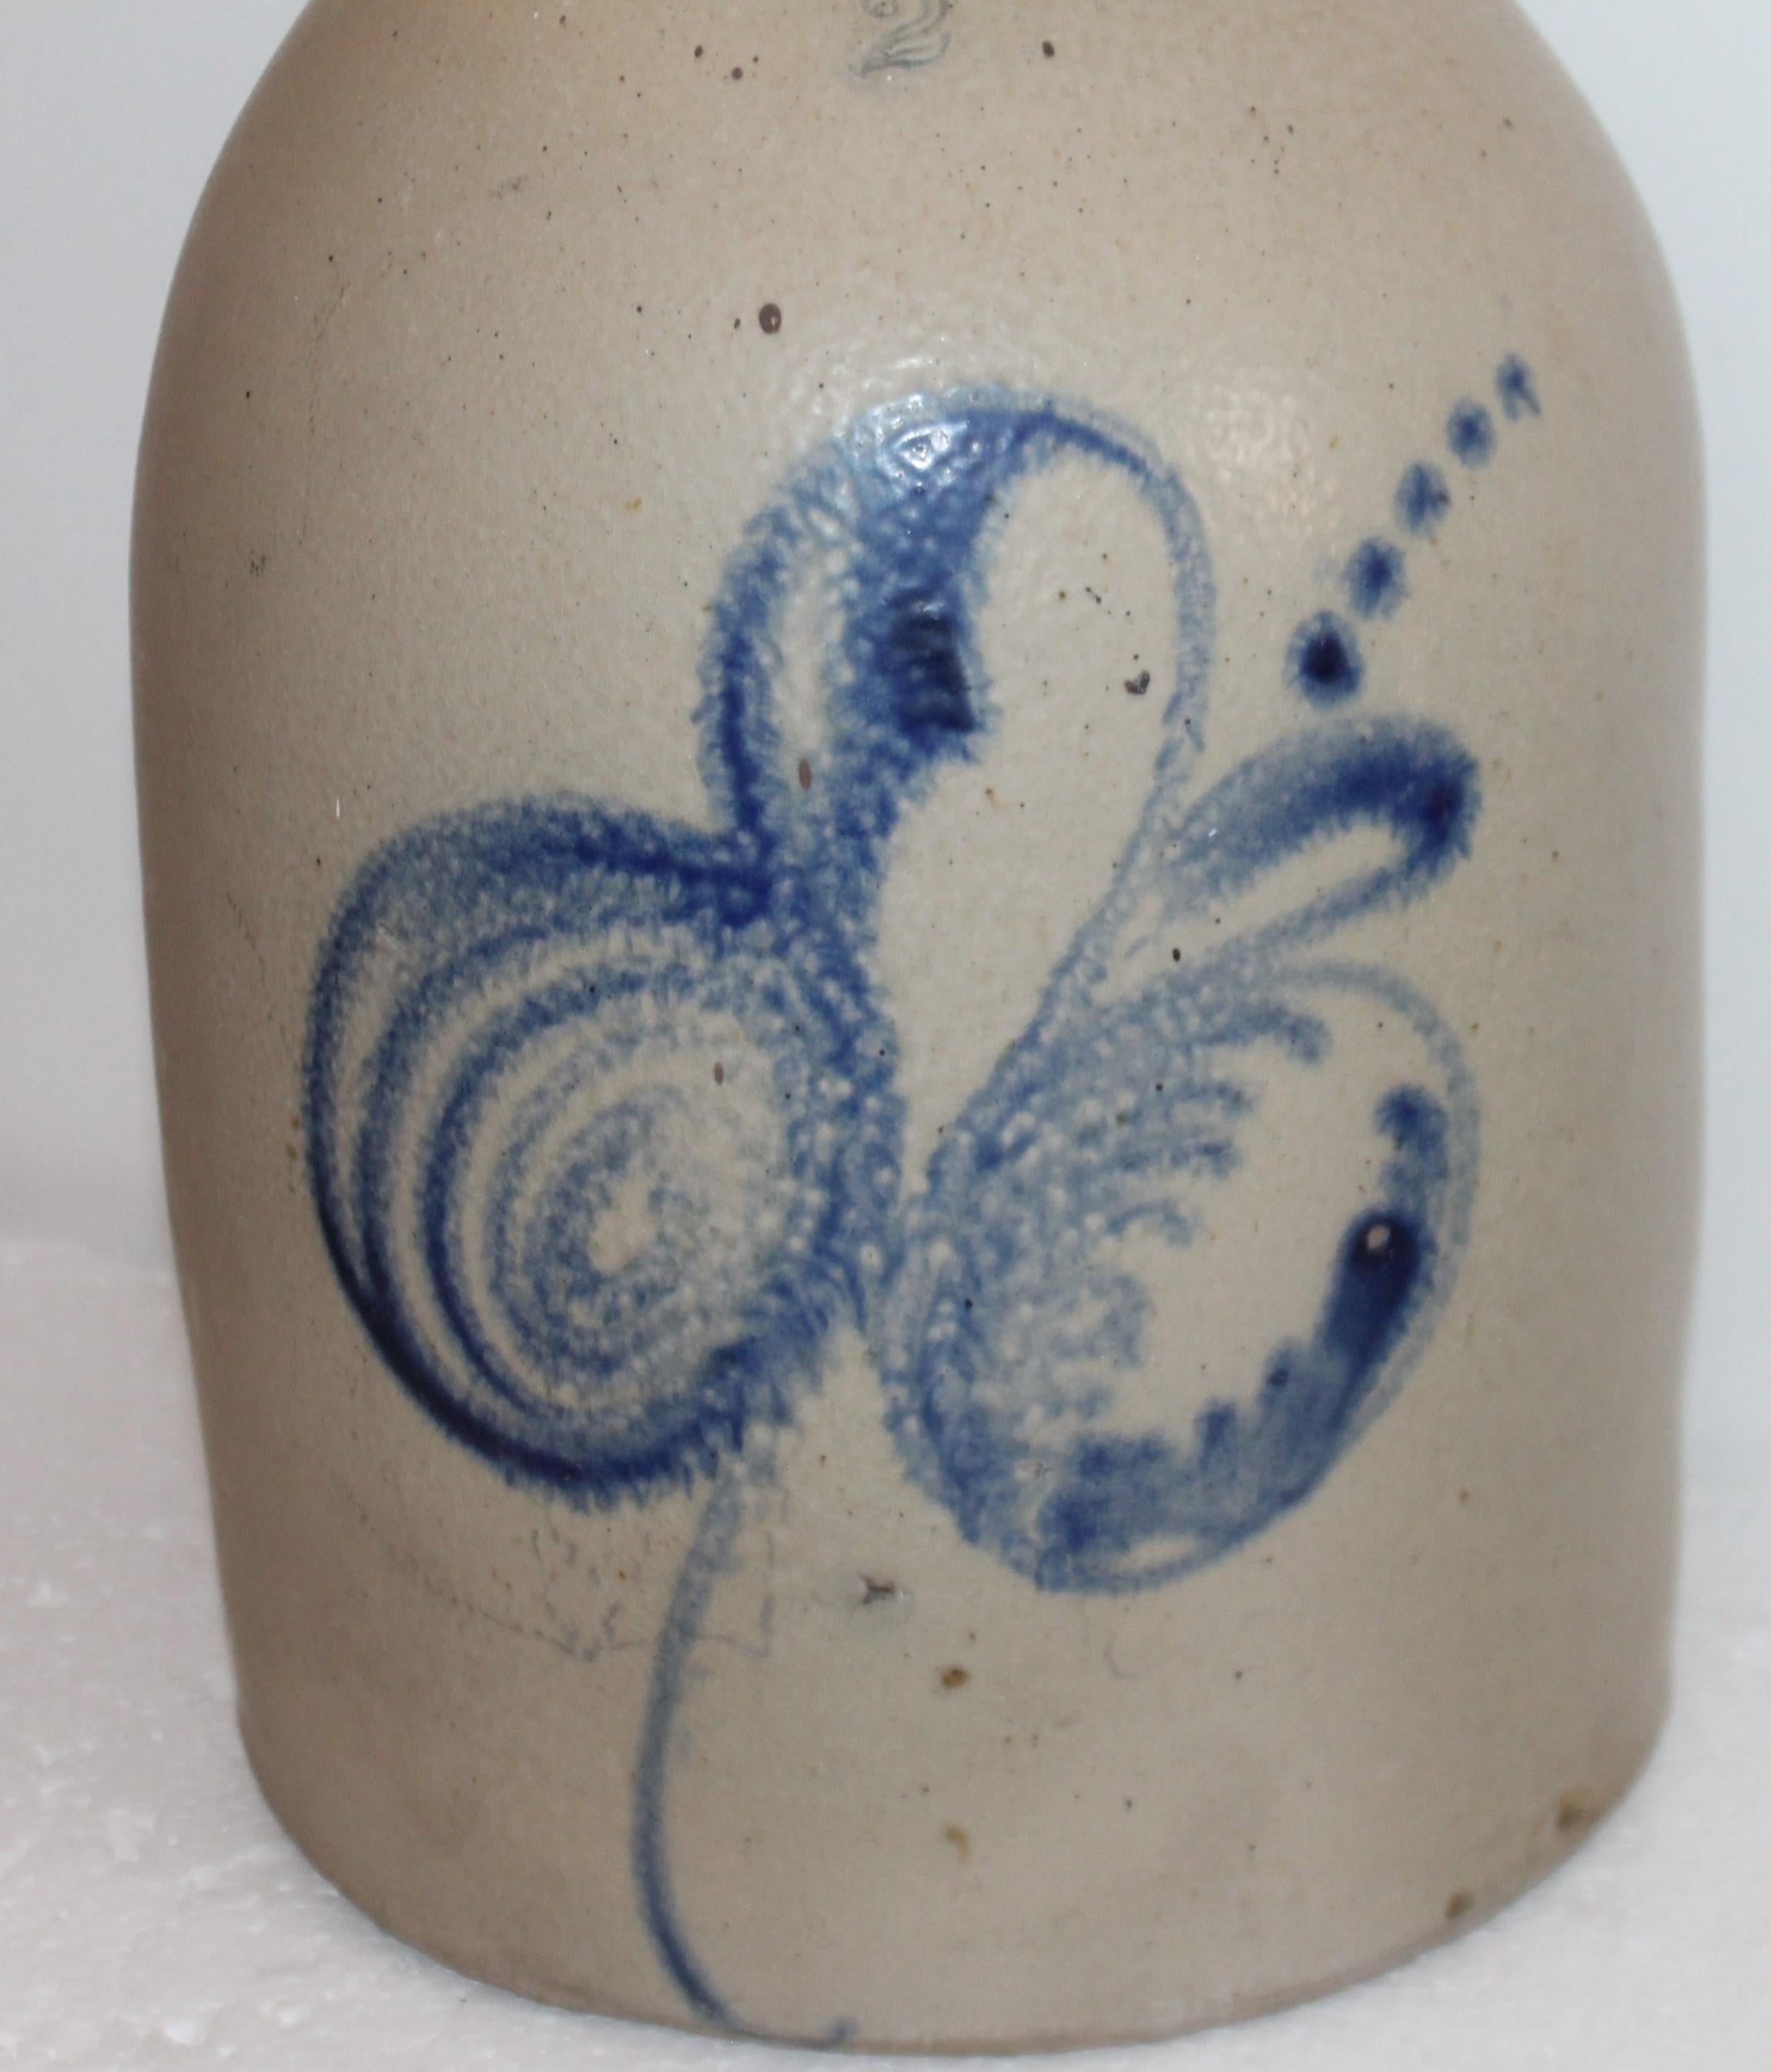 Dieser blau dekorierte Steingutkrug aus dem 19. Jahrhundert hat ein interessantes Design und ist vom Hersteller J.S.Tamaka signiert.